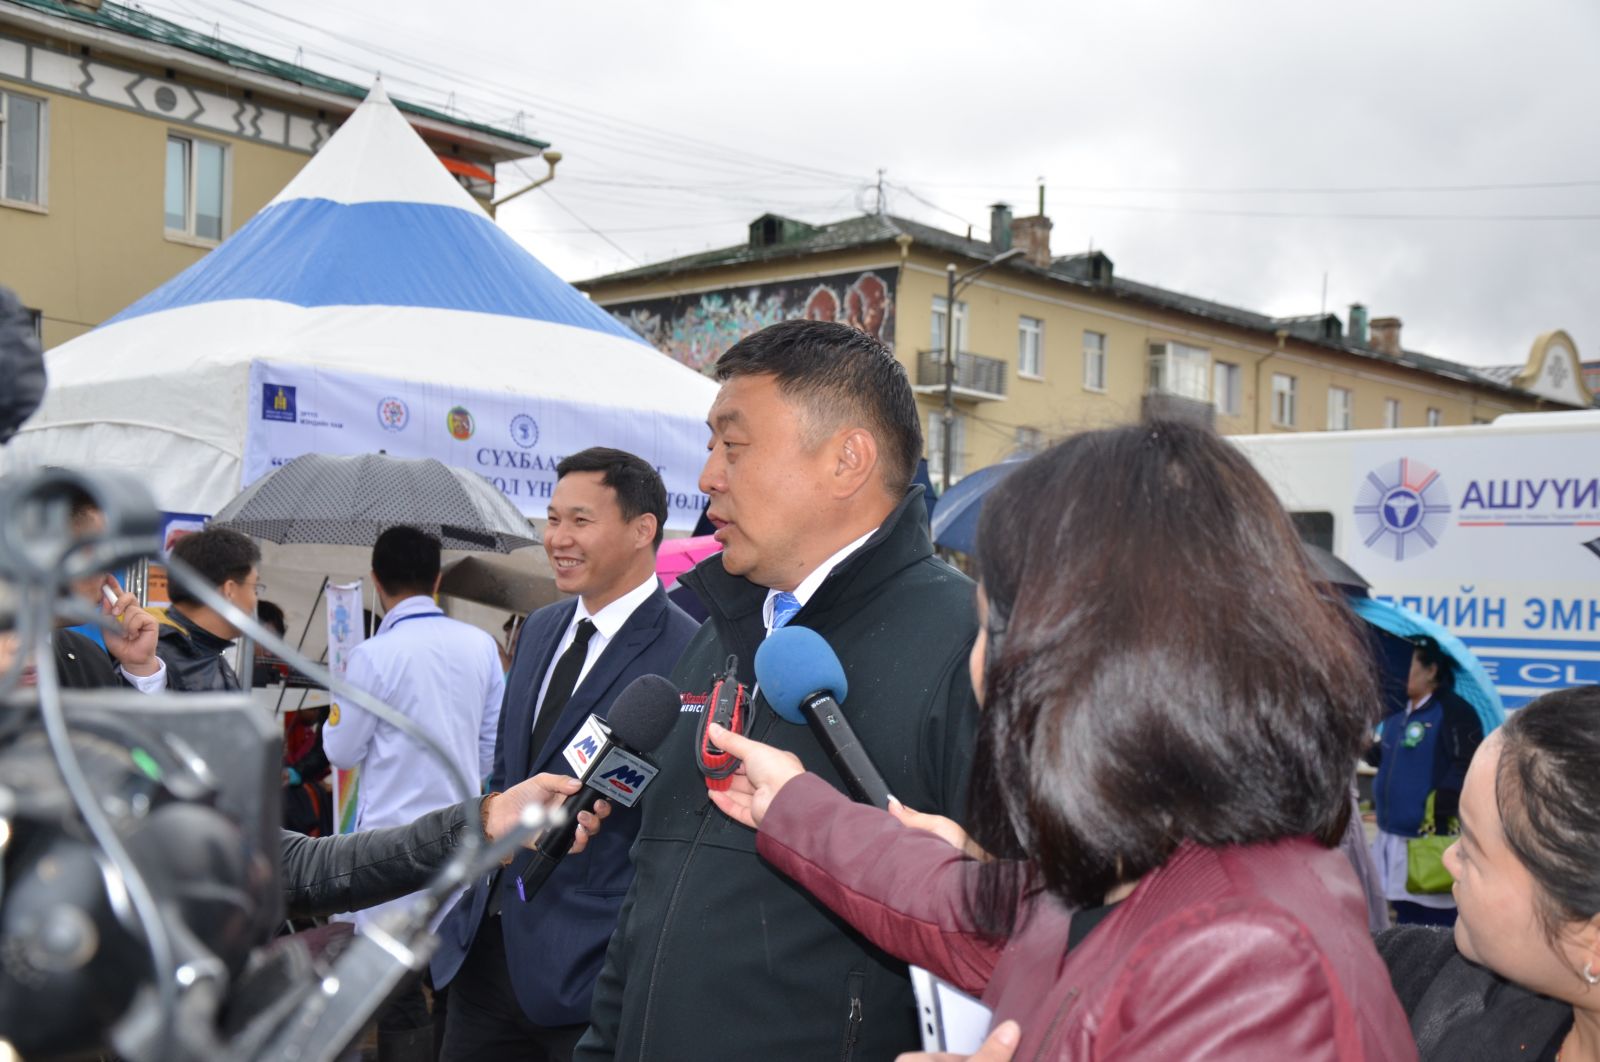 Сүхбаатар дүүрэгт “Элэг бүтэн Монгол” нээлттэй өдөрлөг боллоо